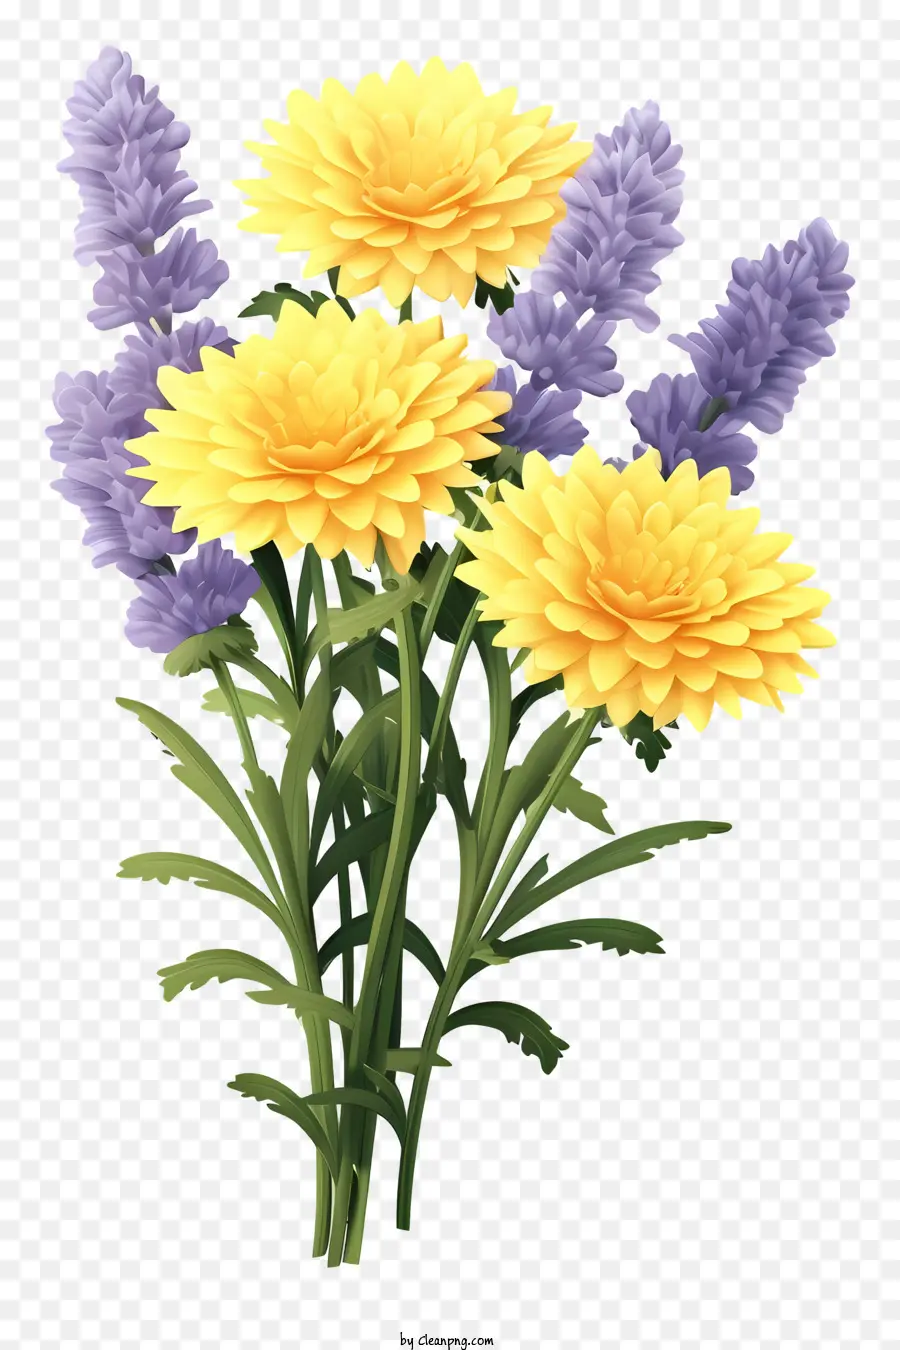 BOUQUET FLOORE GIORALI FLOORE VERDE CERCHIO DEGGI - Bouquet vibrante di fiori gialli e verdi